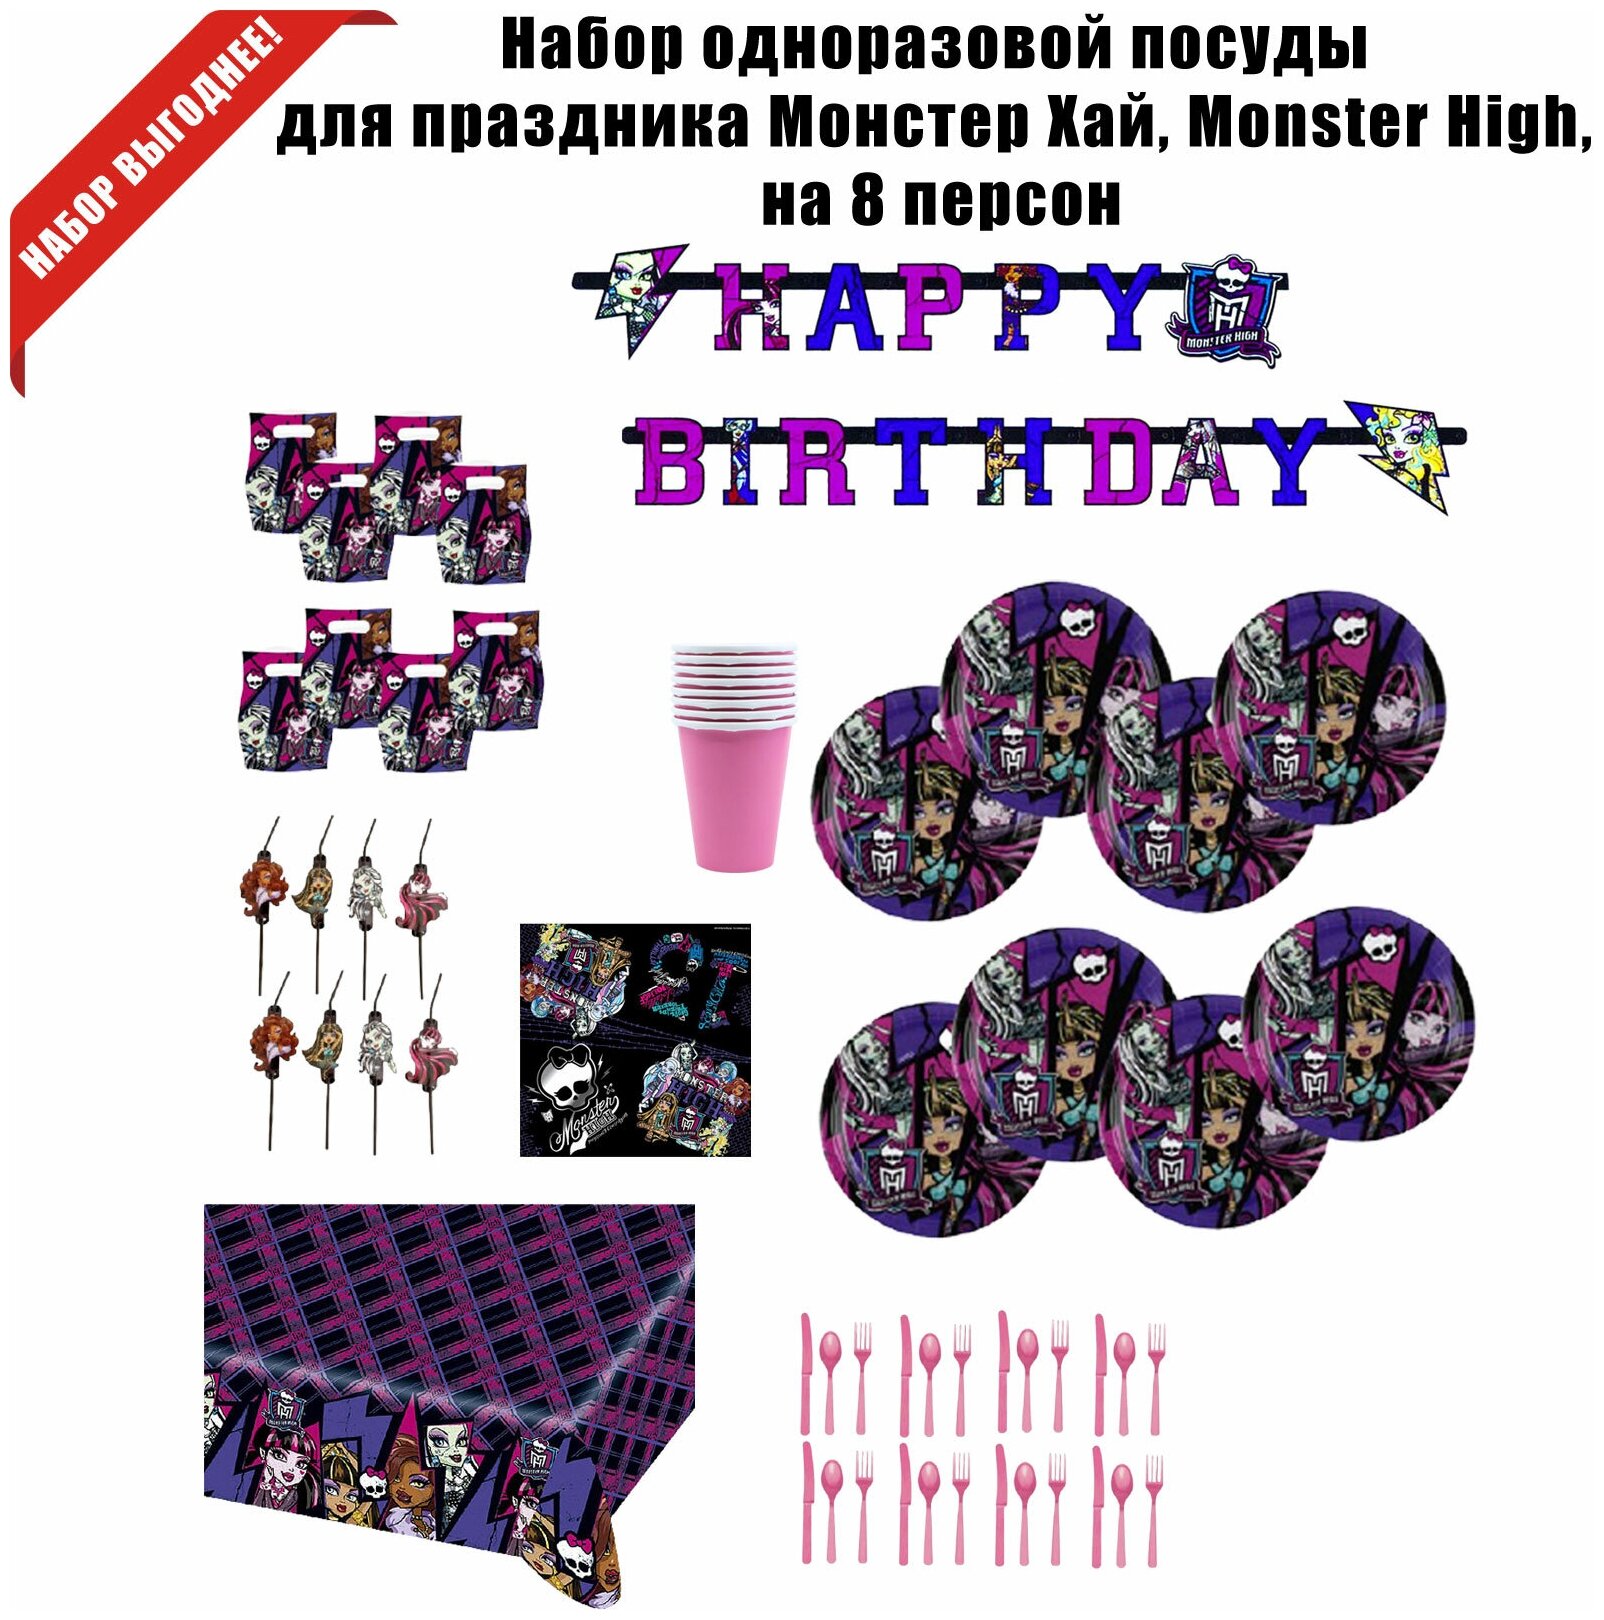 Набор одноразовой посуды для праздника Монстер Хай, Monster High, на 8 персон - фотография № 2